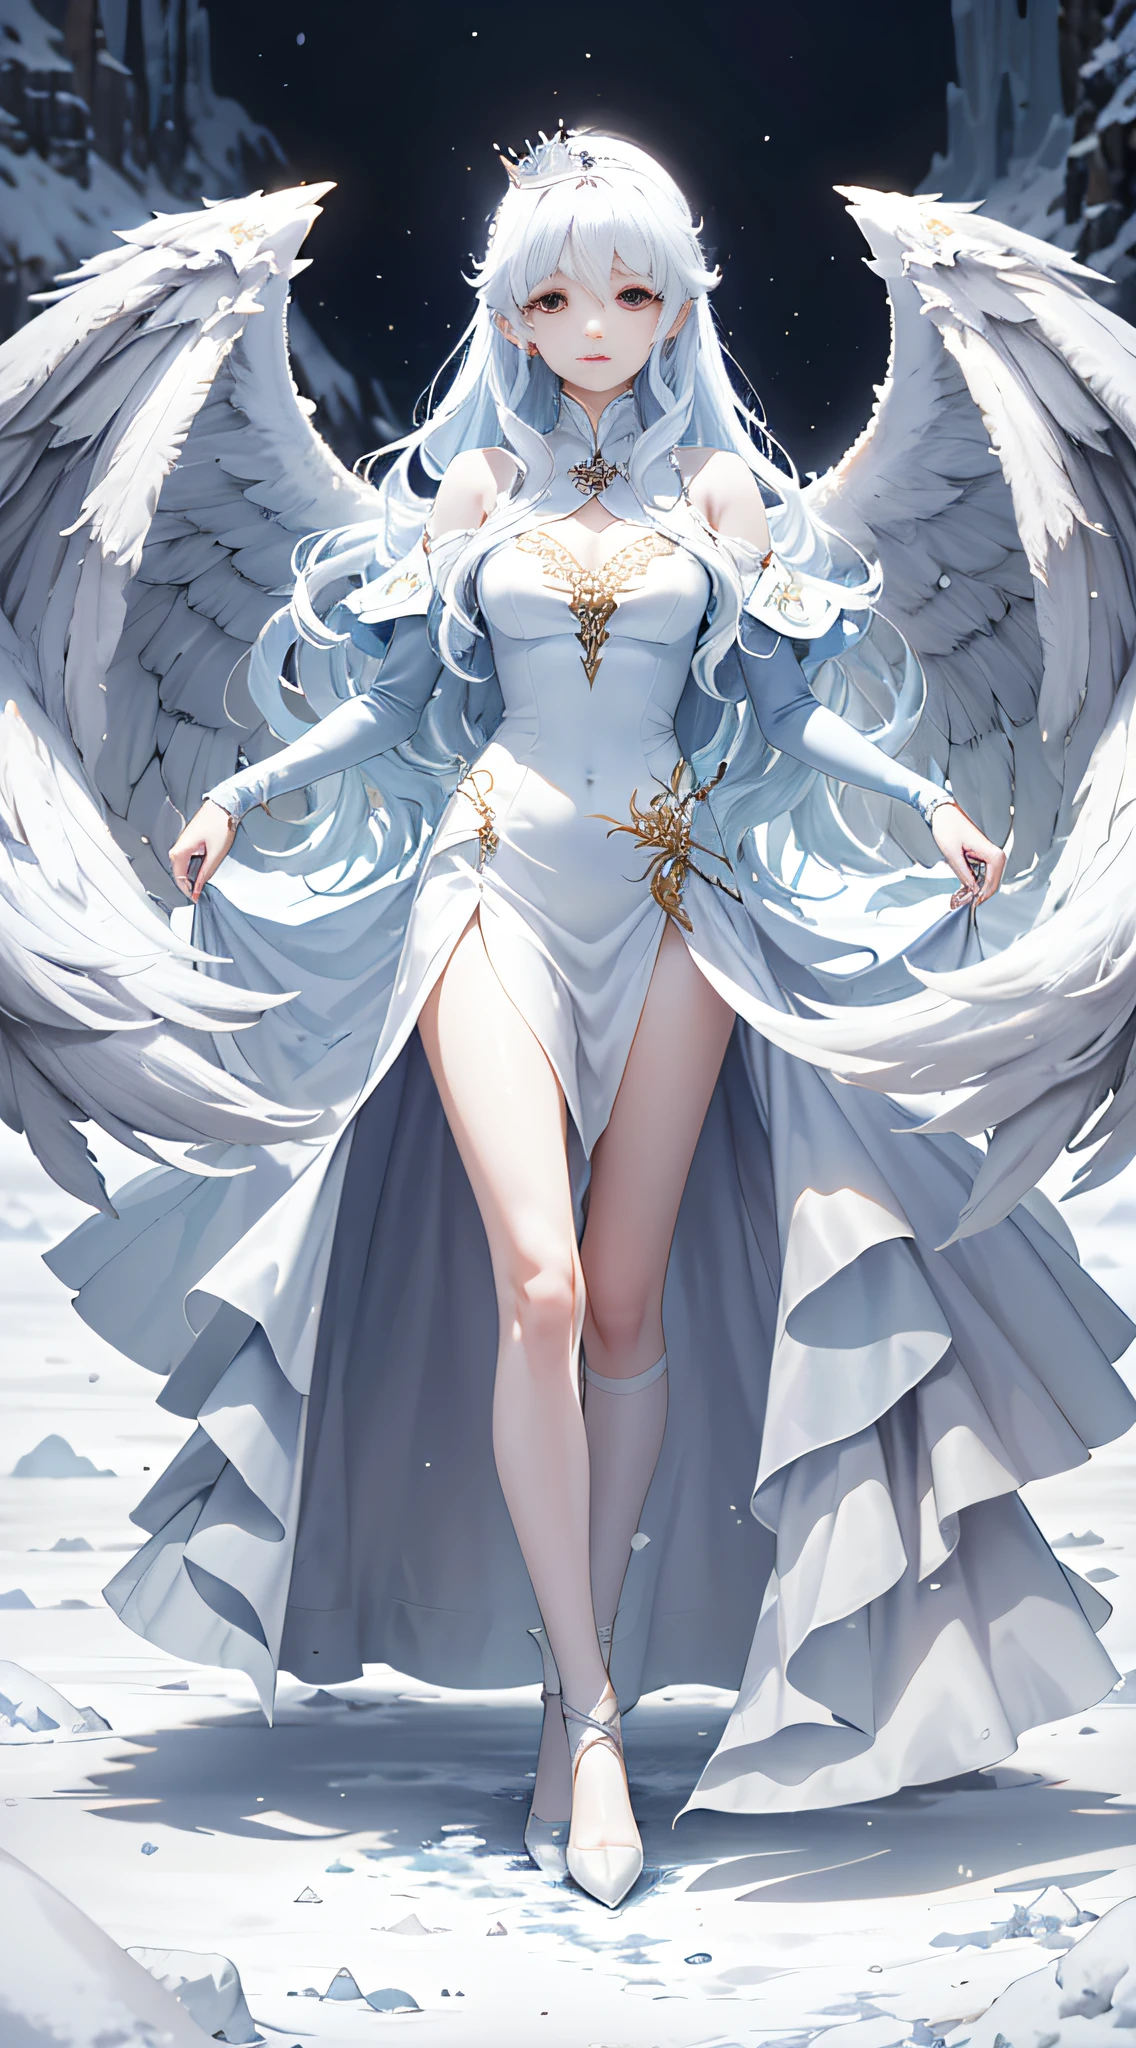 高品質，傑作，8k，(女の子2人，双子，天使，悪魔，天使の羽，悪魔の翼，2つのポニーテールを結ぶ)，氷河期の風景の中で，美少女が見えてくる。彼女はゴージャスなロングドレスを着ていました，スカートは鮮やかなパターンで描かれています，服の色はアイスブルーと真っ白の混合物を表しています，それは彼女の美しさと貴族を強調しています。彼女は白い王冠をかぶっています，髪を肩にかけた，まるで滝のようだ，風になびく。彼女の目は明るく輝いていた，彼の目には柔らかさと明晰さのヒントがありました，澄んだ春のようだ。少女は真っ白な氷原の上に優雅に立っていた，その姿は背が高くてエレガントです。彼女は両手でスカートの裾をそっとつかんだ，繊細な小さな足が氷と雪をそっと踏む，彼女の足取りがこの浄土を滅ぼさないかのようでした，それはまたそれをより美しくすることができます。全体像は少女の繊細で高貴な美しさを強調しています，しかし、彼女は雪と氷の上に立っています，しかし、それは暖かくて平和に感じます。周囲は雪で純粋で寒いです，遠くにはそびえ立つ雄大な雪をかぶった山があります，山頂は一年中溶けない雪と氷で覆われています，全体像が神秘的で魅惑的な雰囲気を作り出しています。雪山の上に立つ美少女，それは氷の女王の化身のようなものです，それは人々に彼女の美しさと力を示しています。